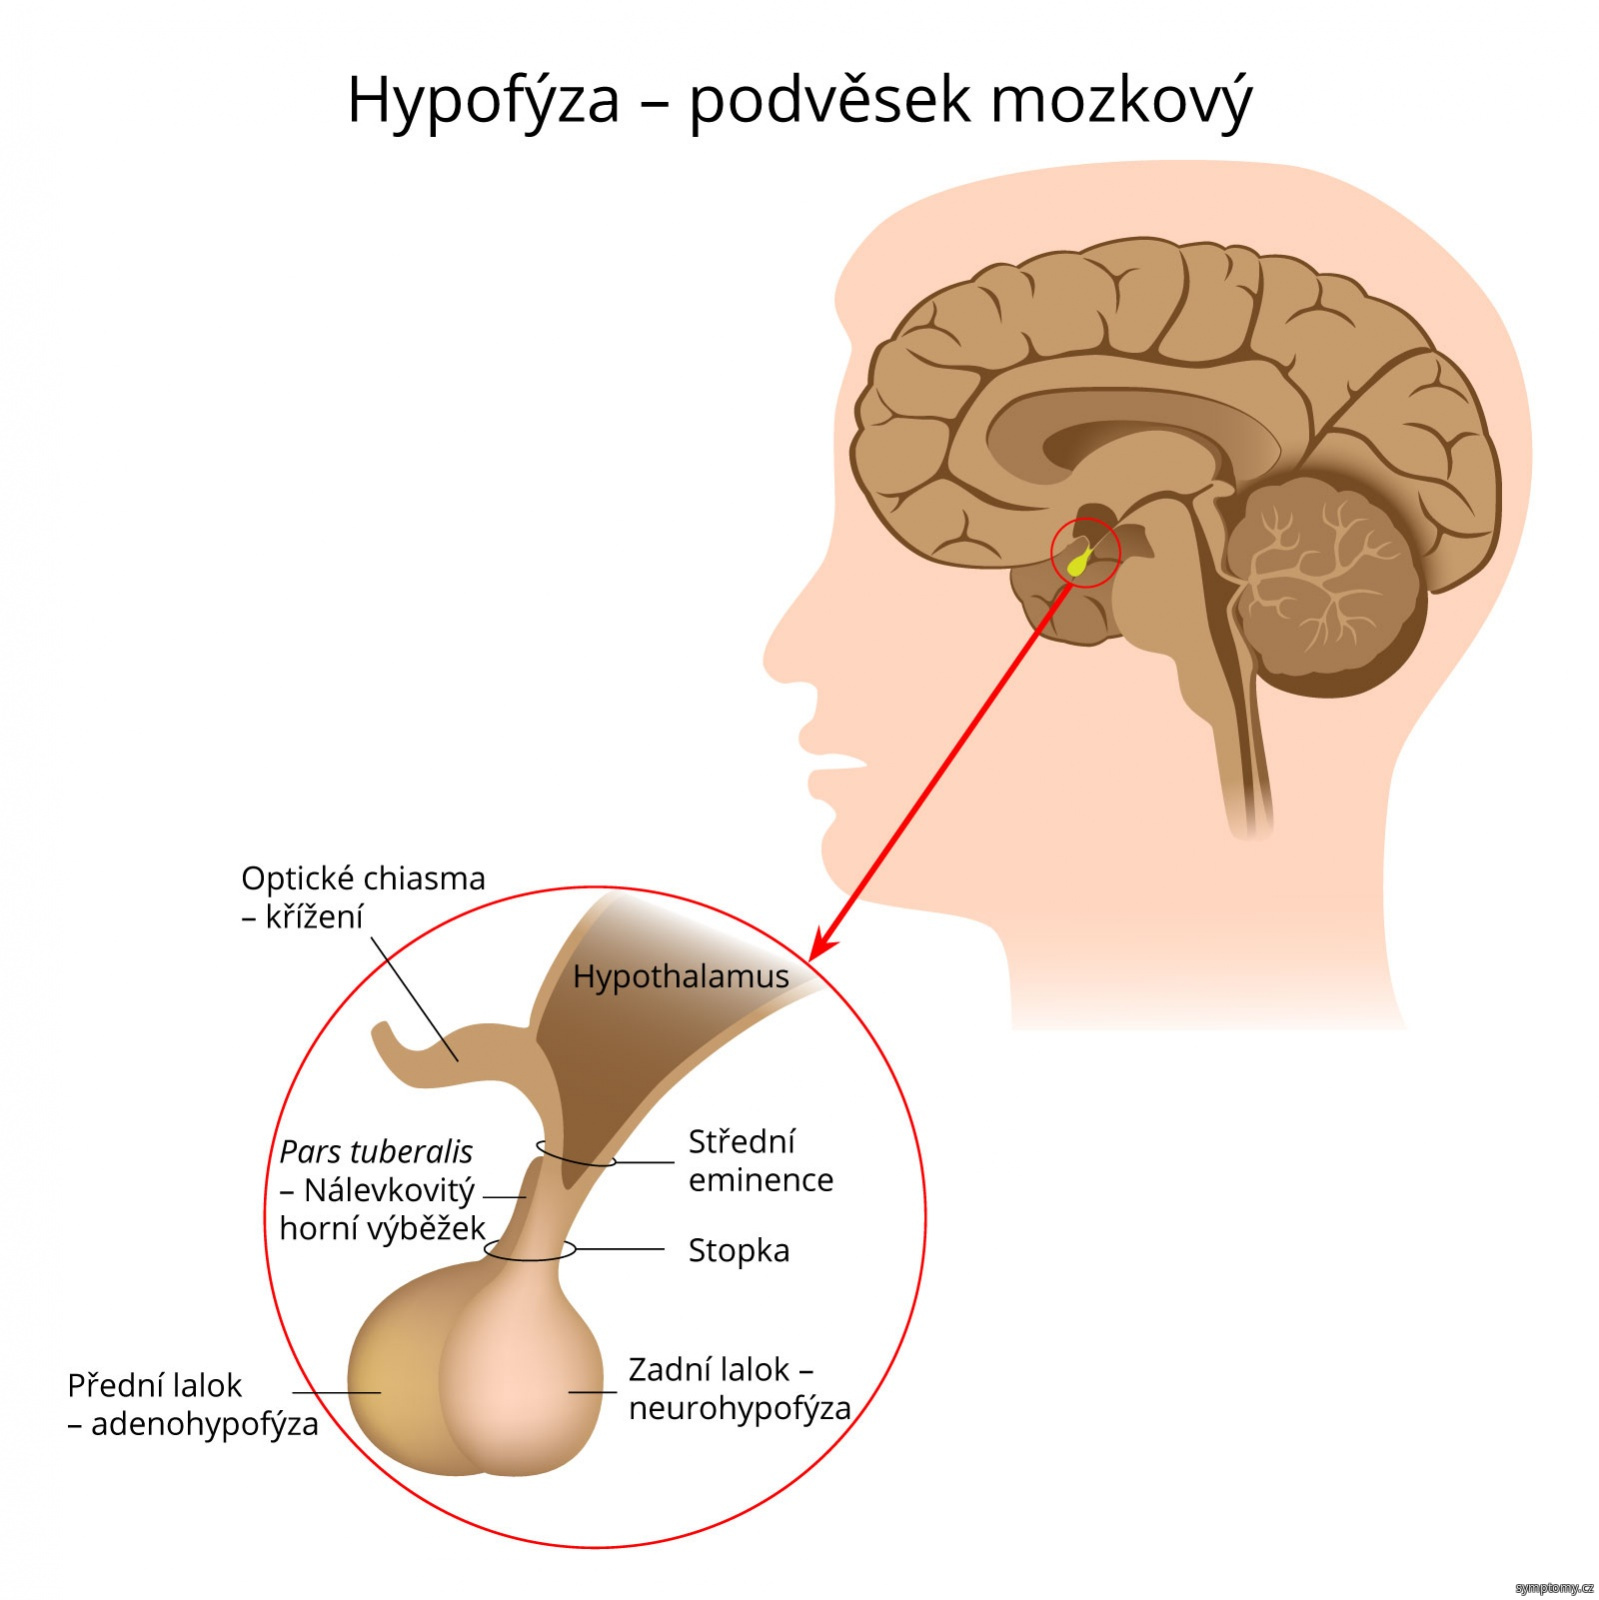 Hypofýza – podvěsek mozkový